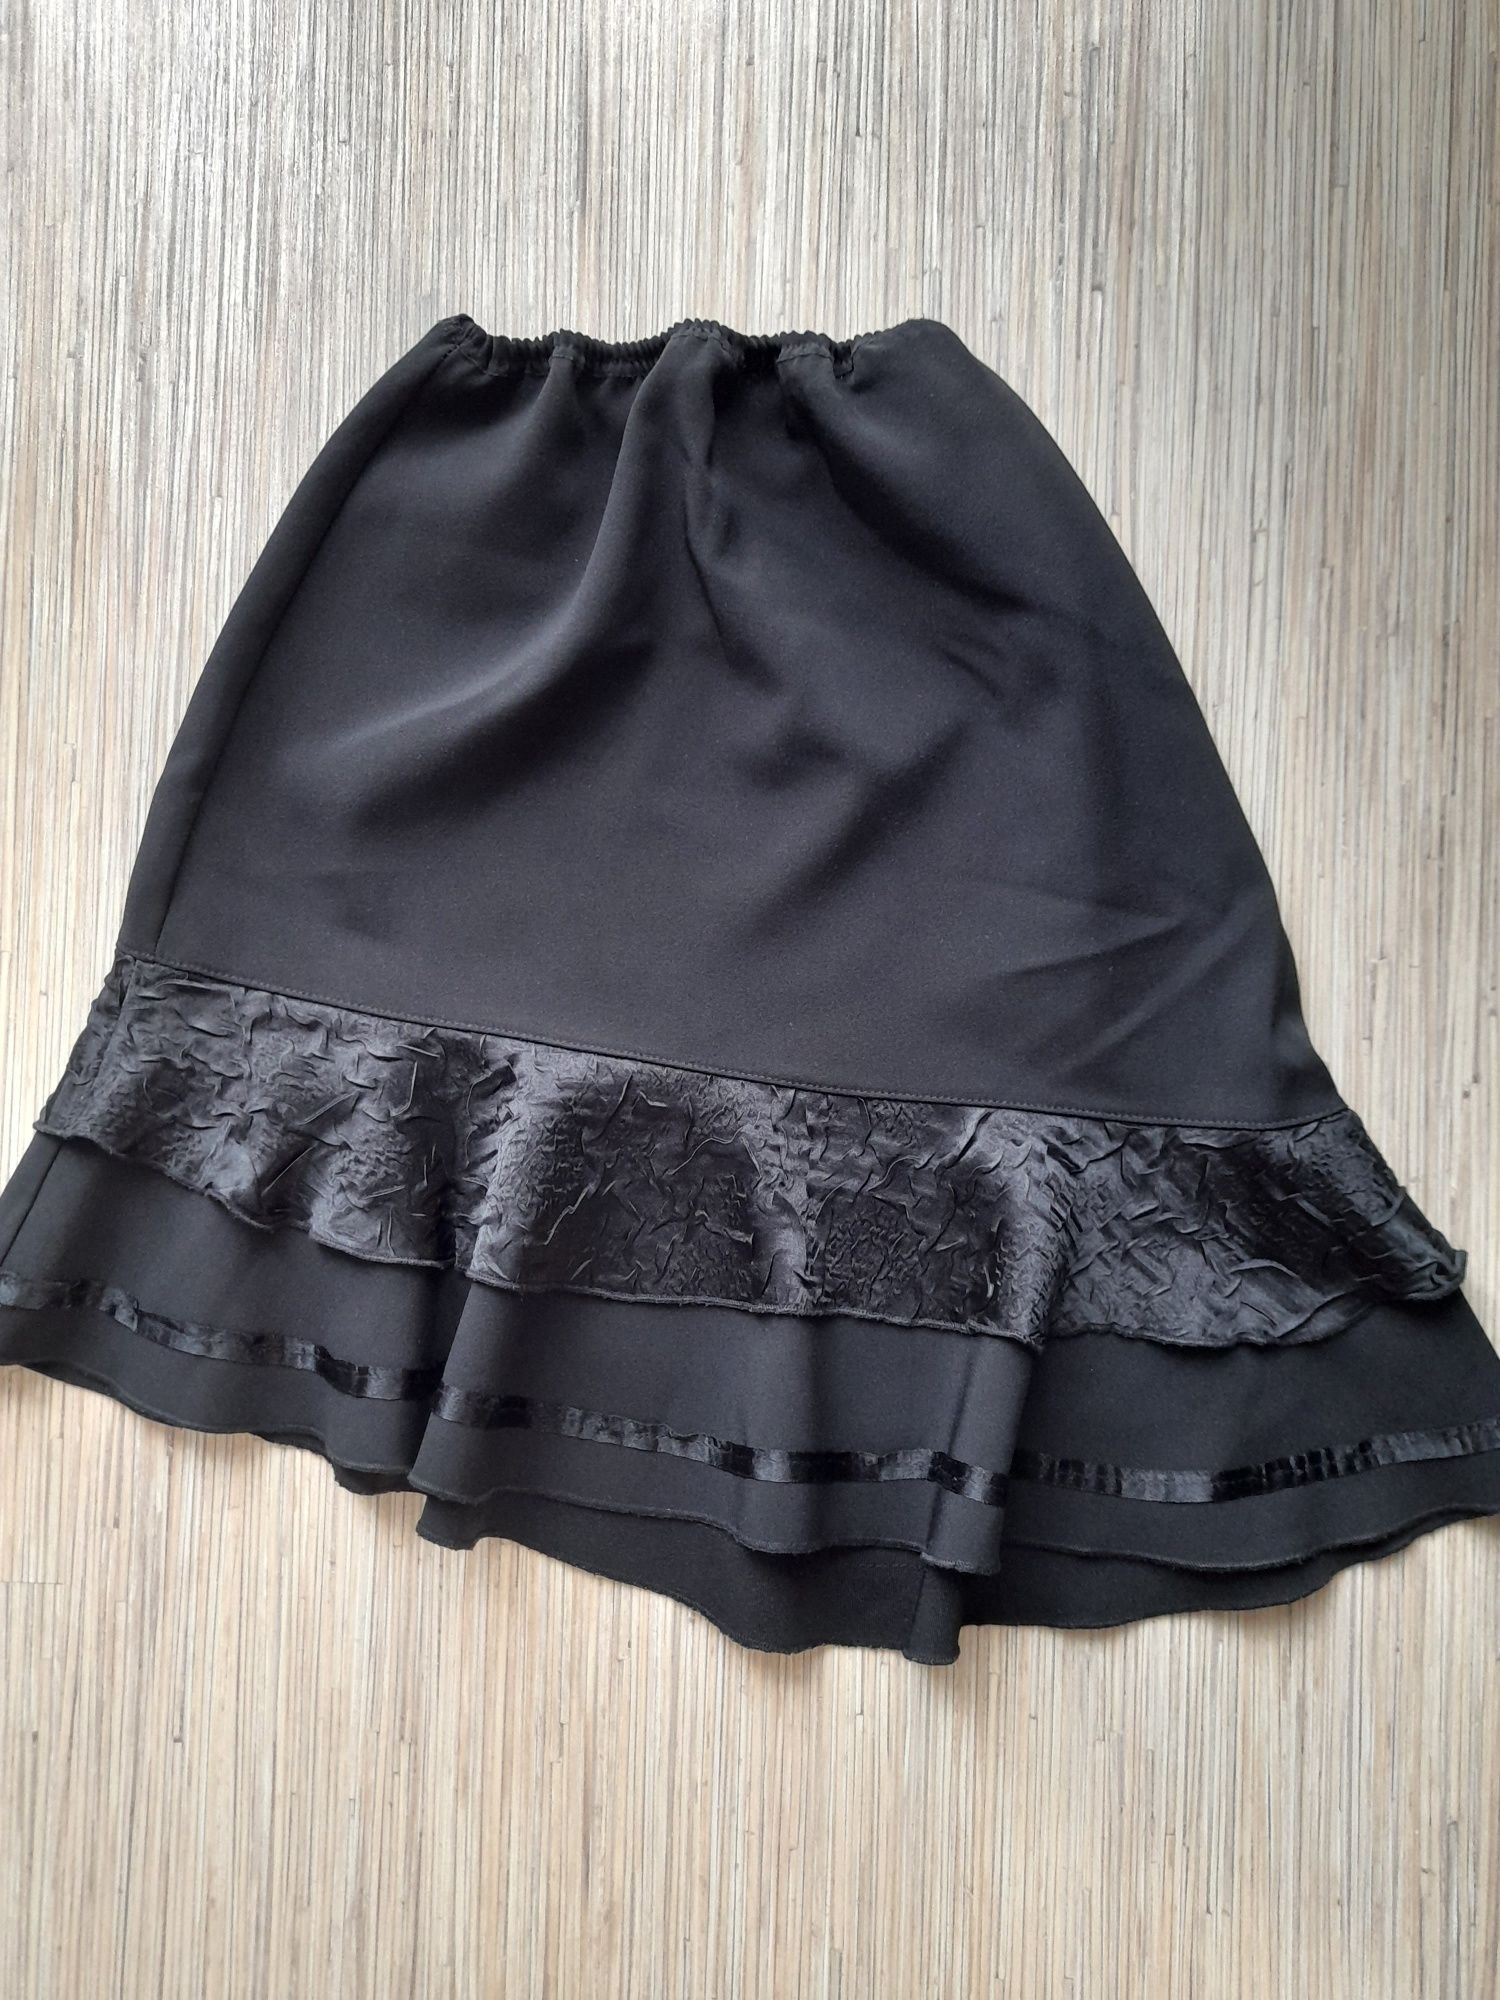 Czarna spódnica elegancka